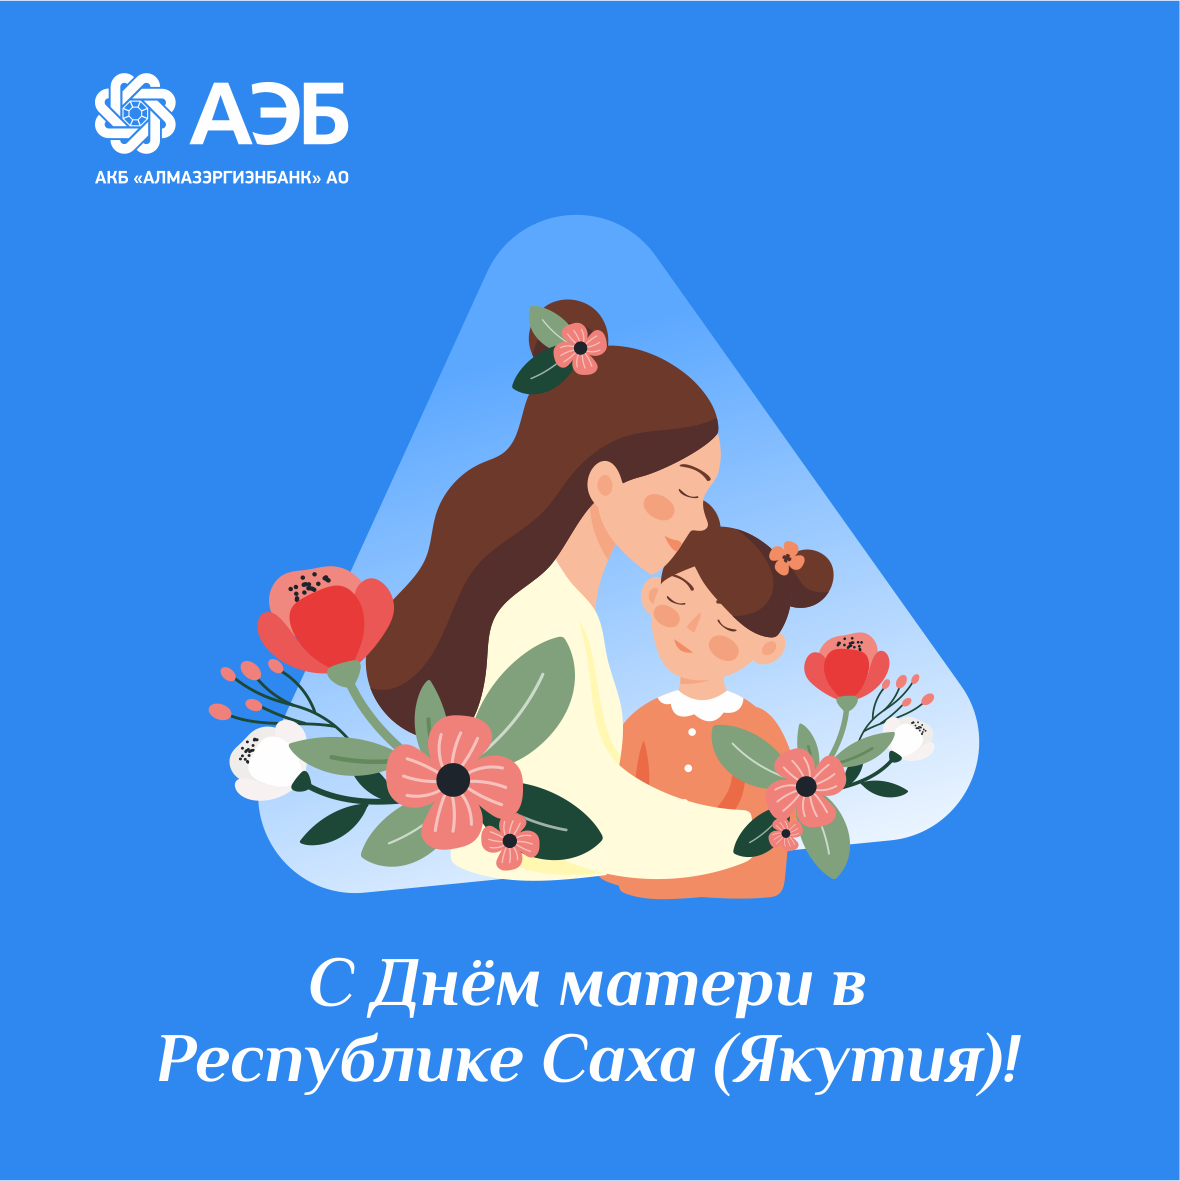 Новостной дайджест, посвященный празднику День матери в России